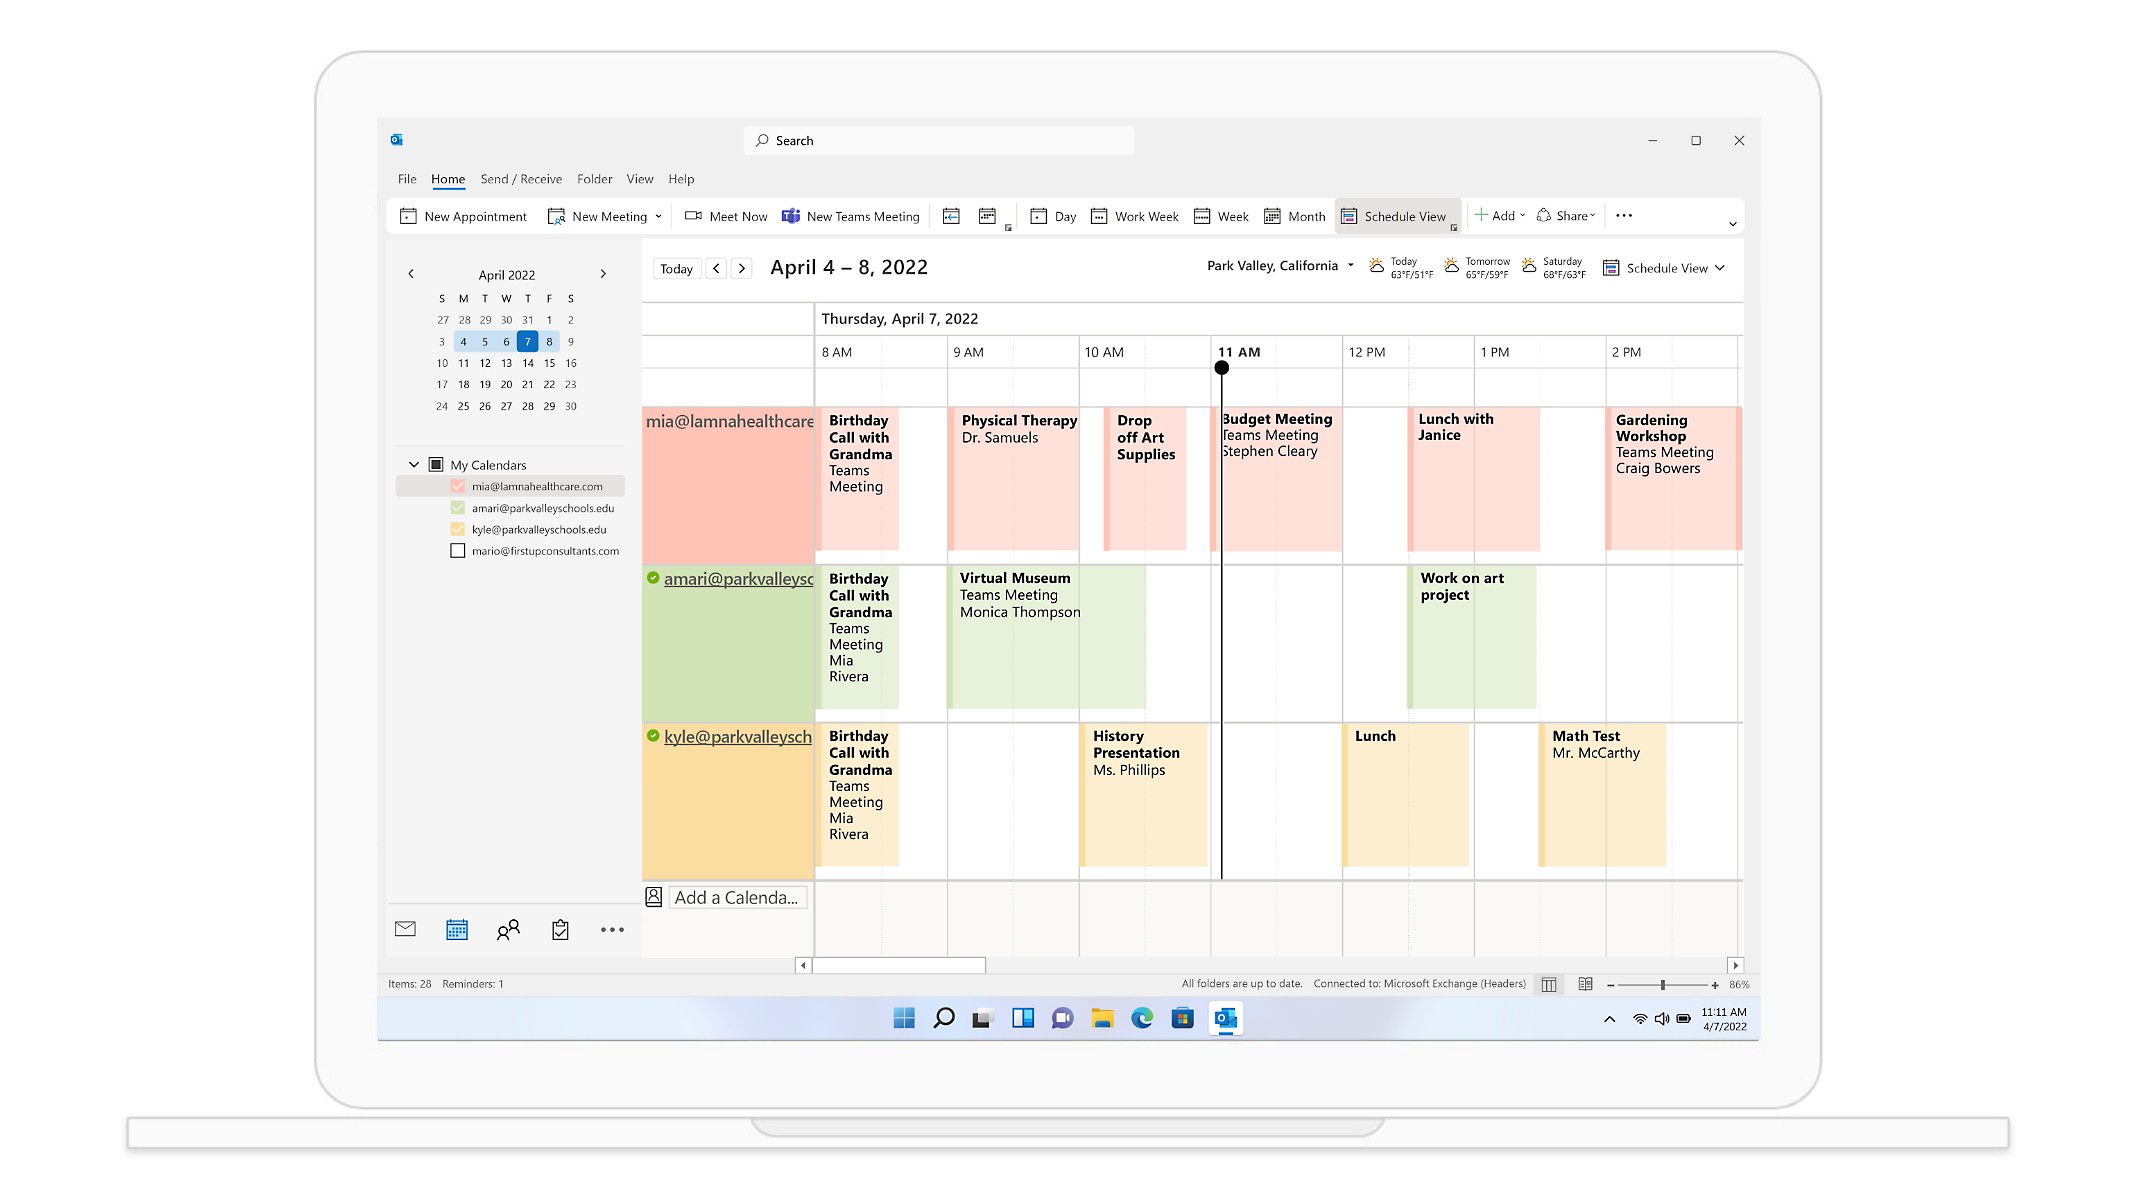 O vizualizare calendar din Outlook care afișează întâlnirile și rezervările pentru săptămâna care începe din 29 martie.